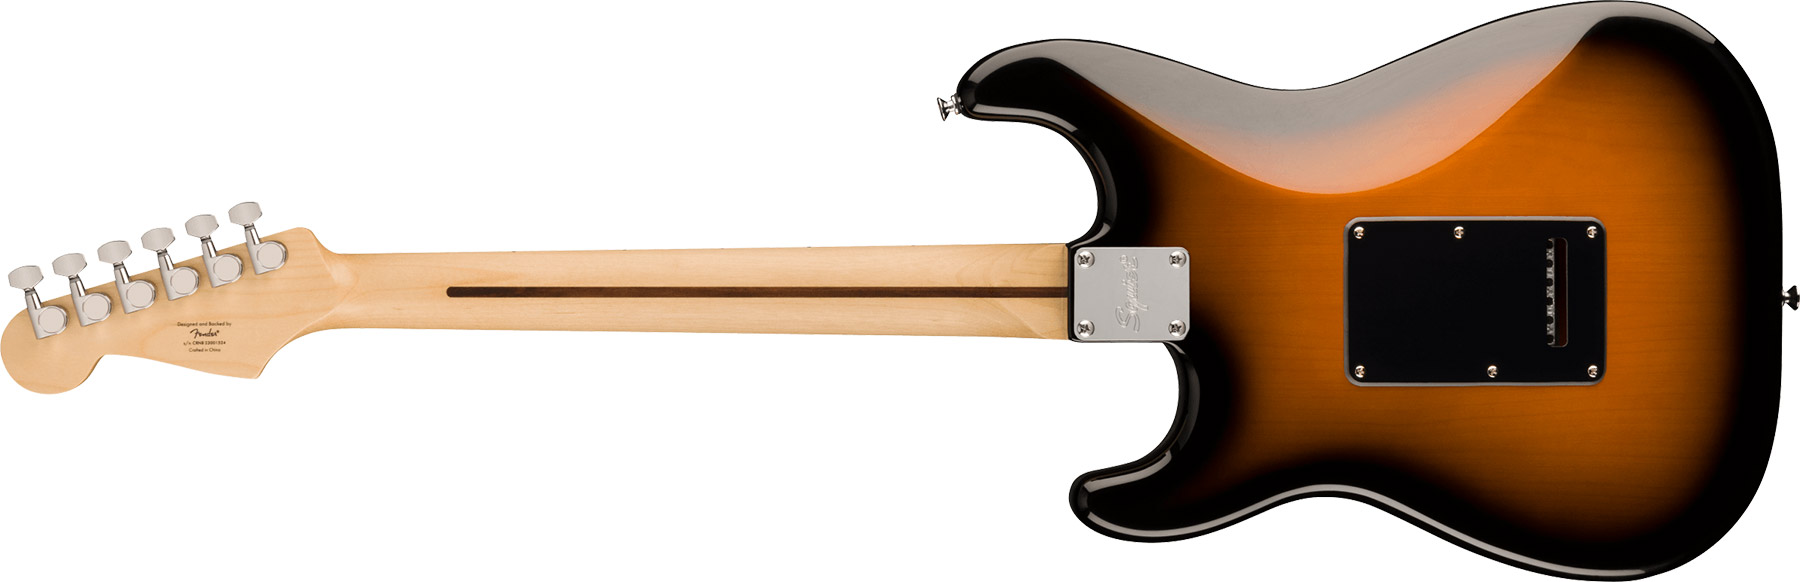 Squier Strat Sonic Hss Trem Mn - 2-color Sunburst - Elektrische gitaar in Str-vorm - Variation 1